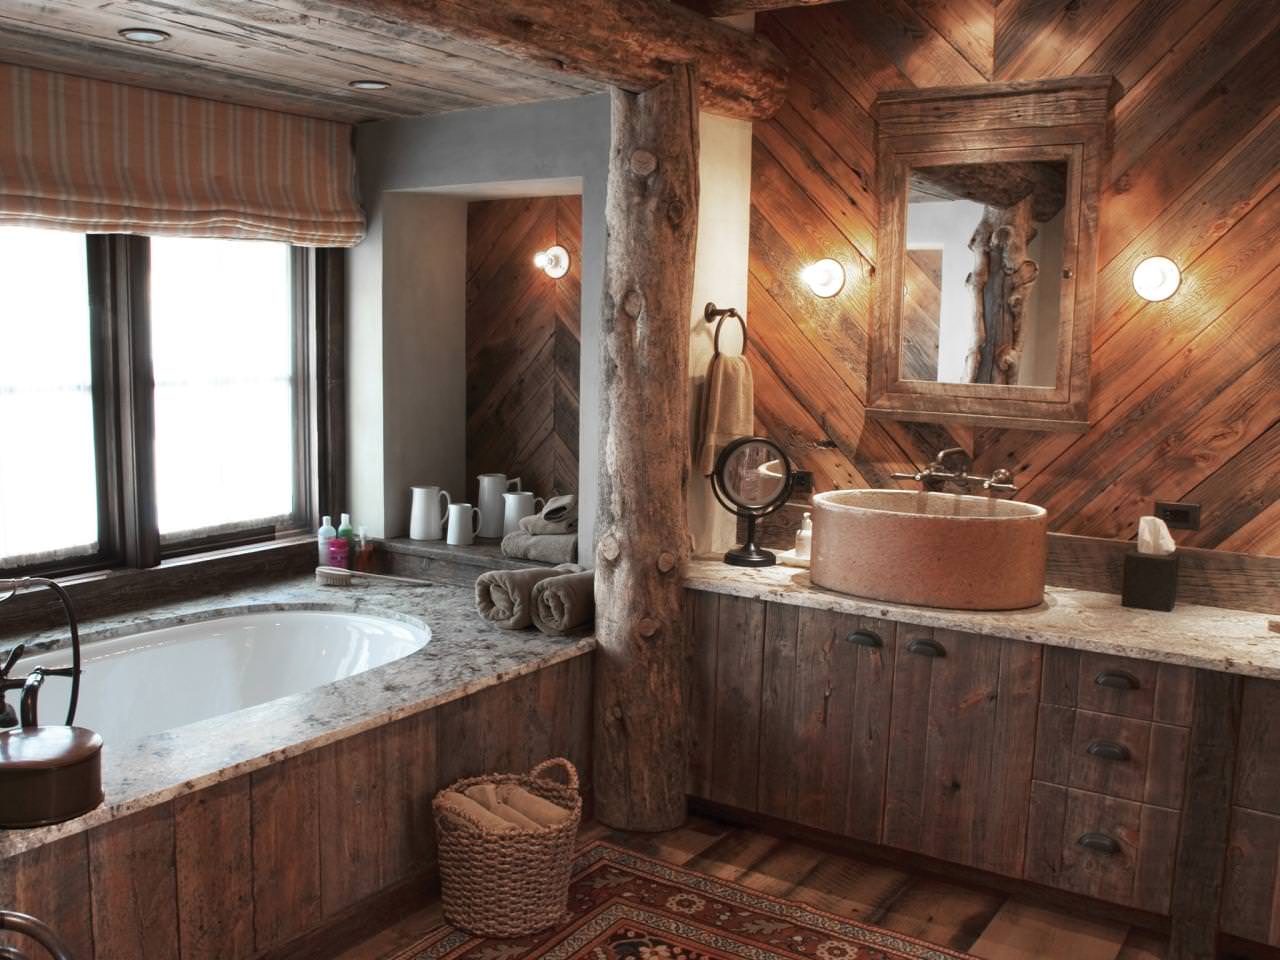 Baño en una casa de madera: foto del interior de un hermoso acabado en una casa desde un bar.